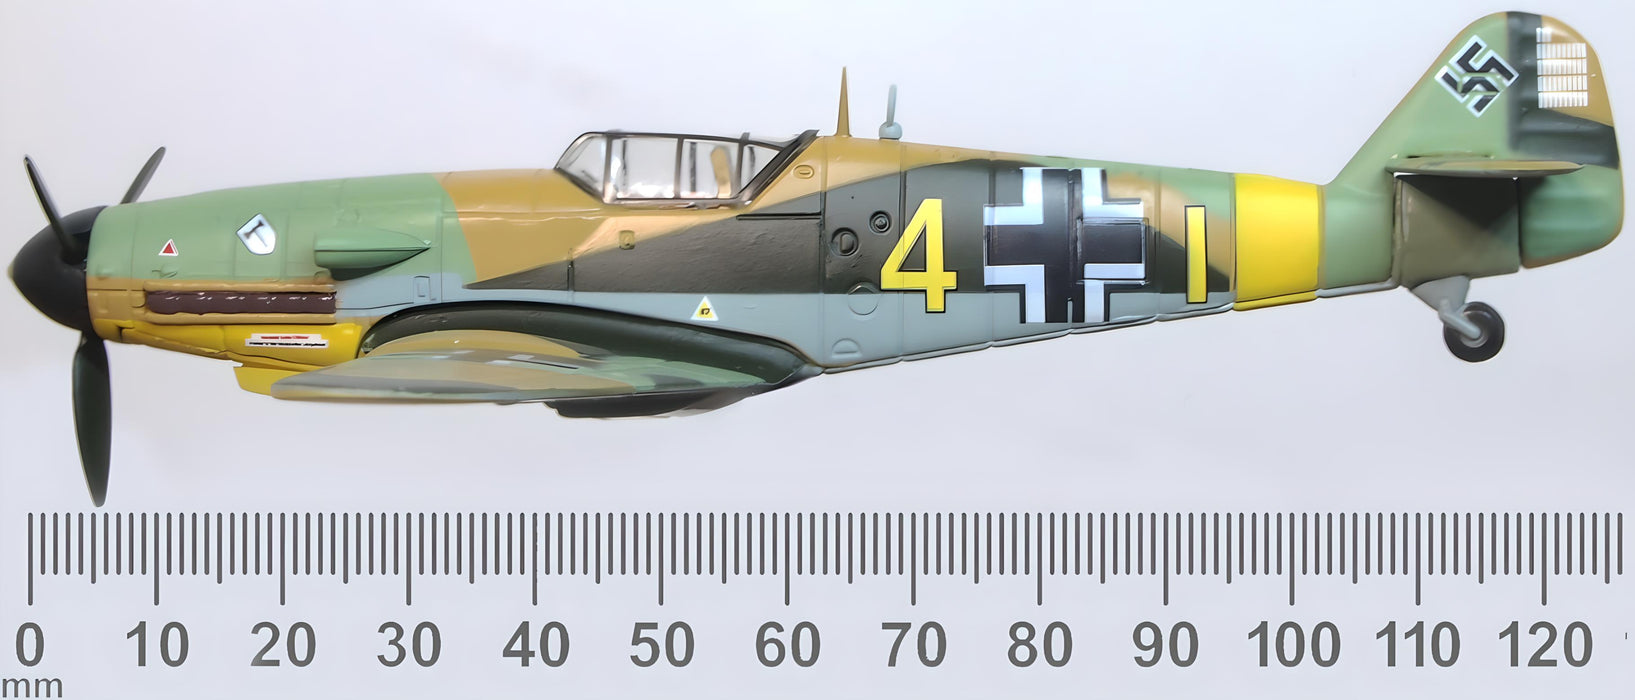 Oxford Diecast Messerschmitt Bf 109F-4/Trop-104 Eberhard von Boremski - 1:72 scale AC114 measurements